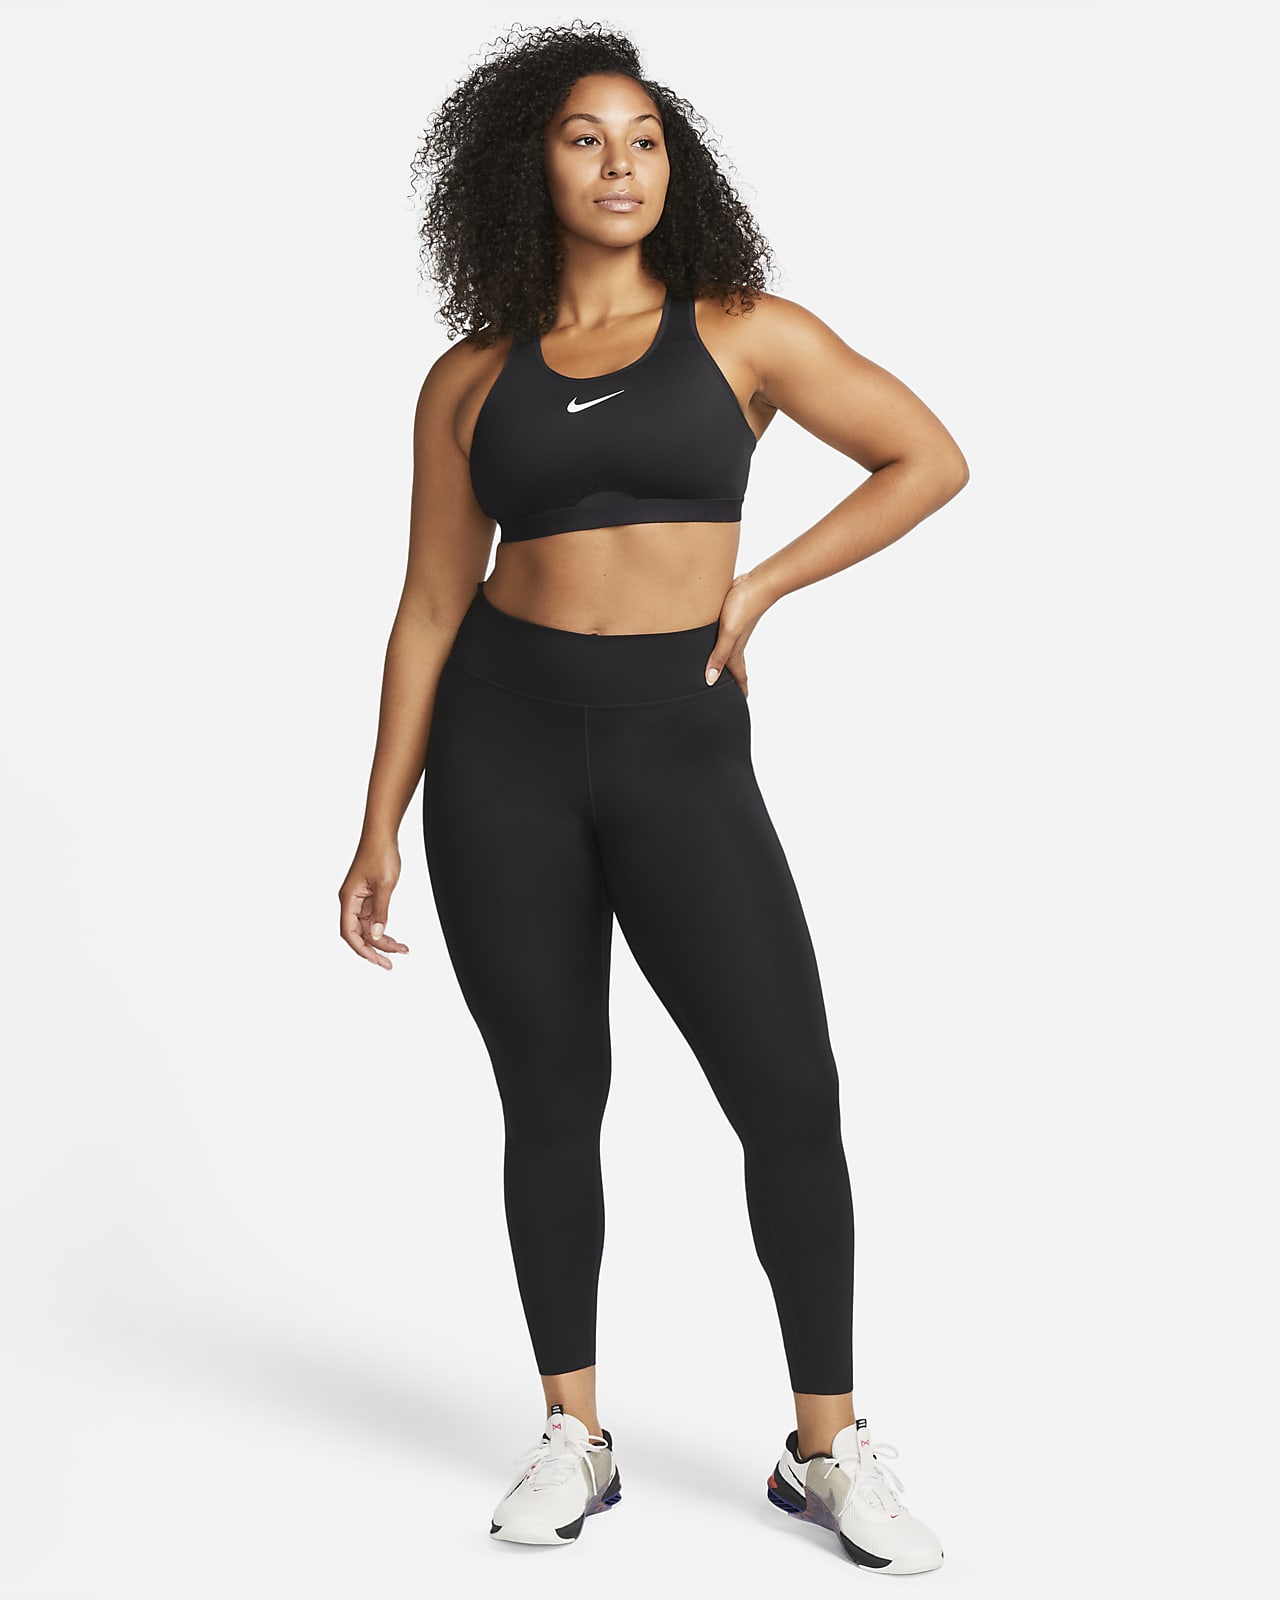 Nike Women's Medium Support Non Padded Sports Bra-Black/White BV3900-010  Large